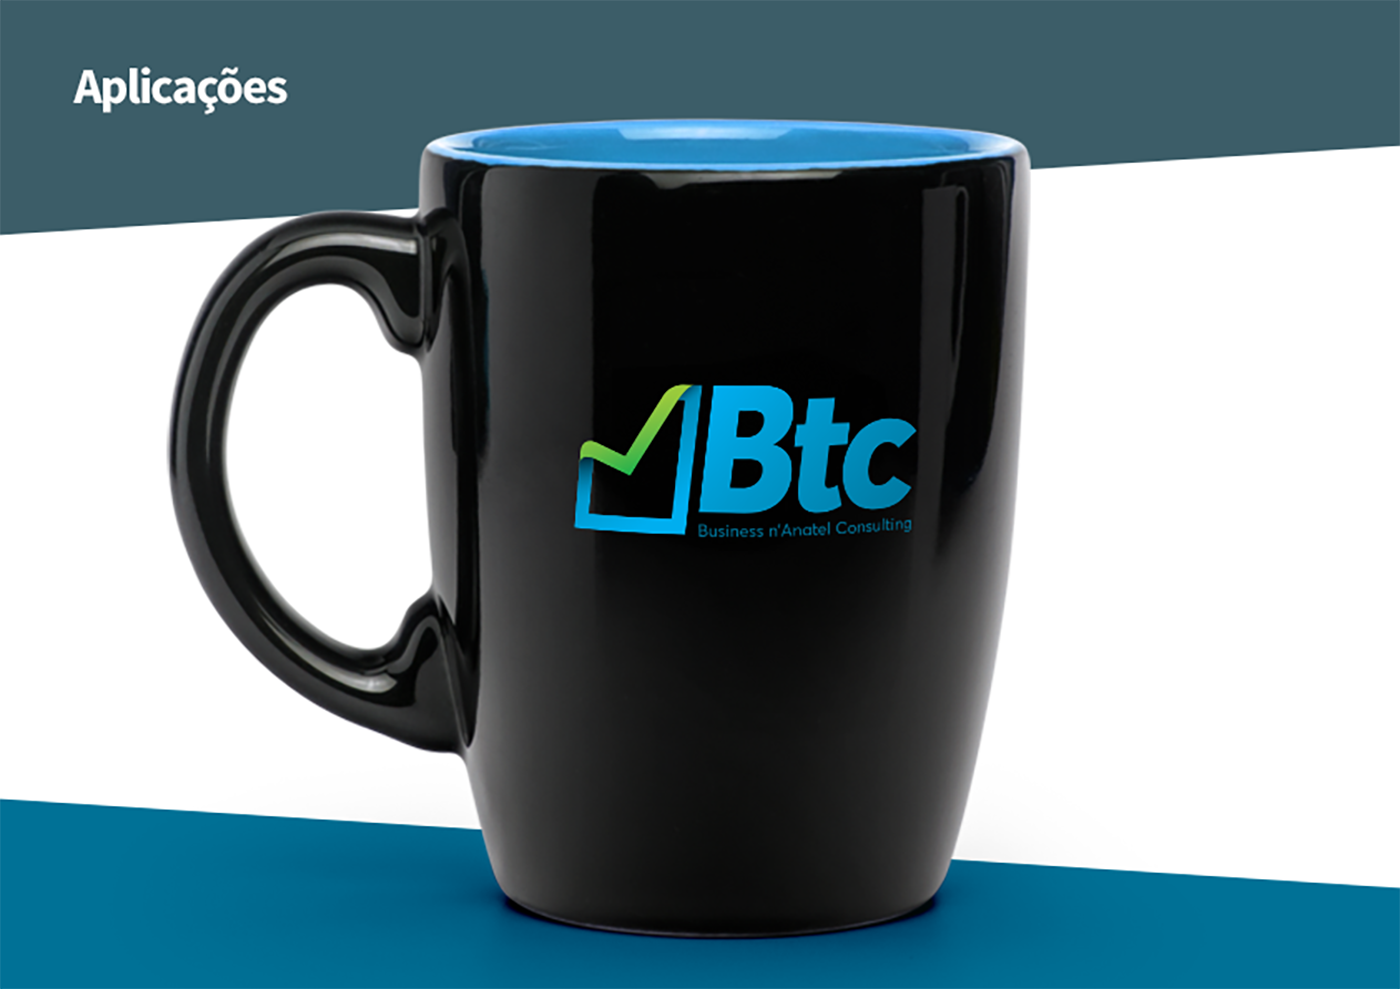 btc b2s logo marca inspiration